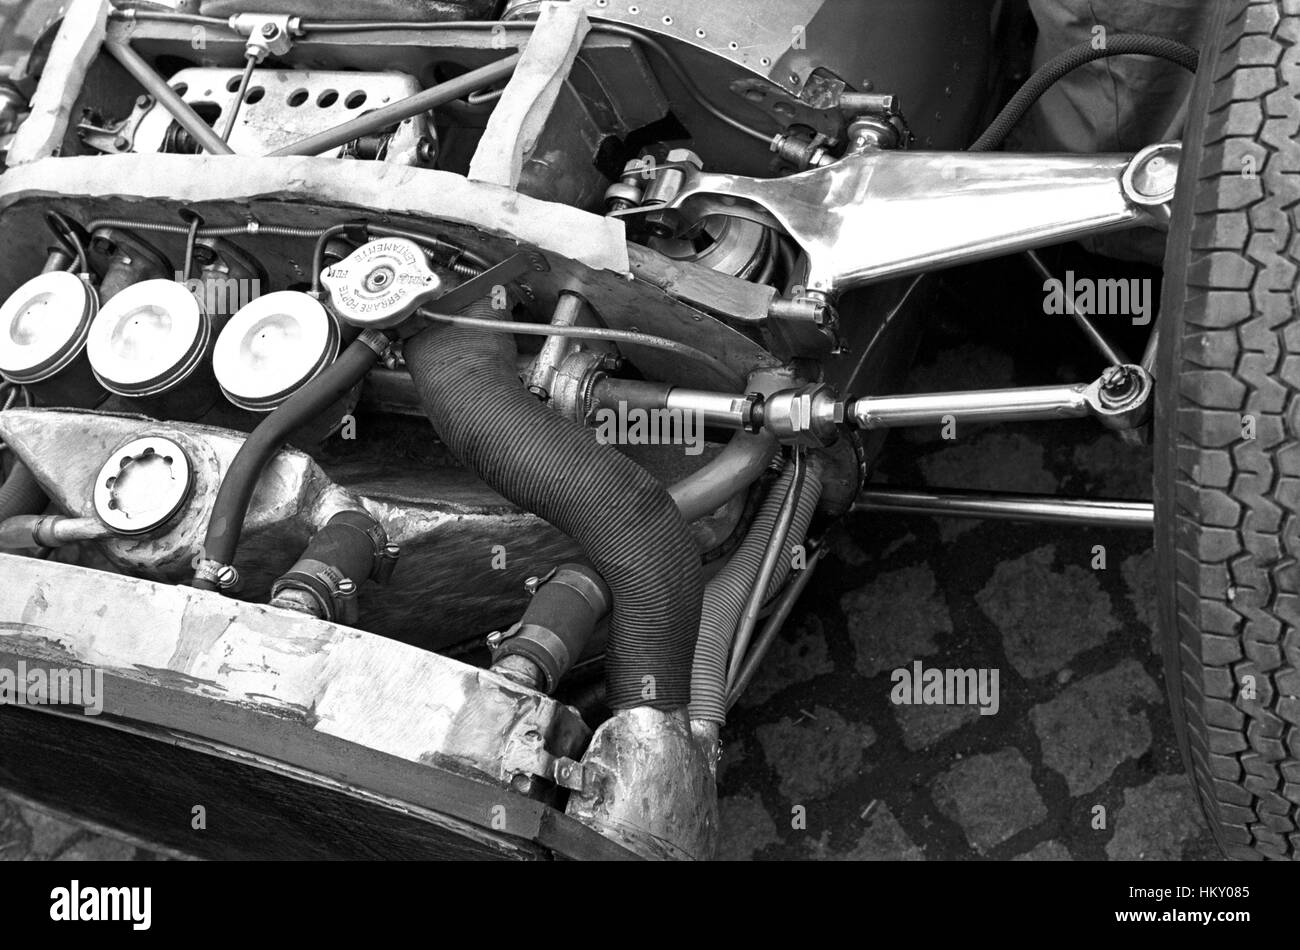 1963 Ferrari 156 Aero Sospensione Anteriore Monza GG Foto Stock